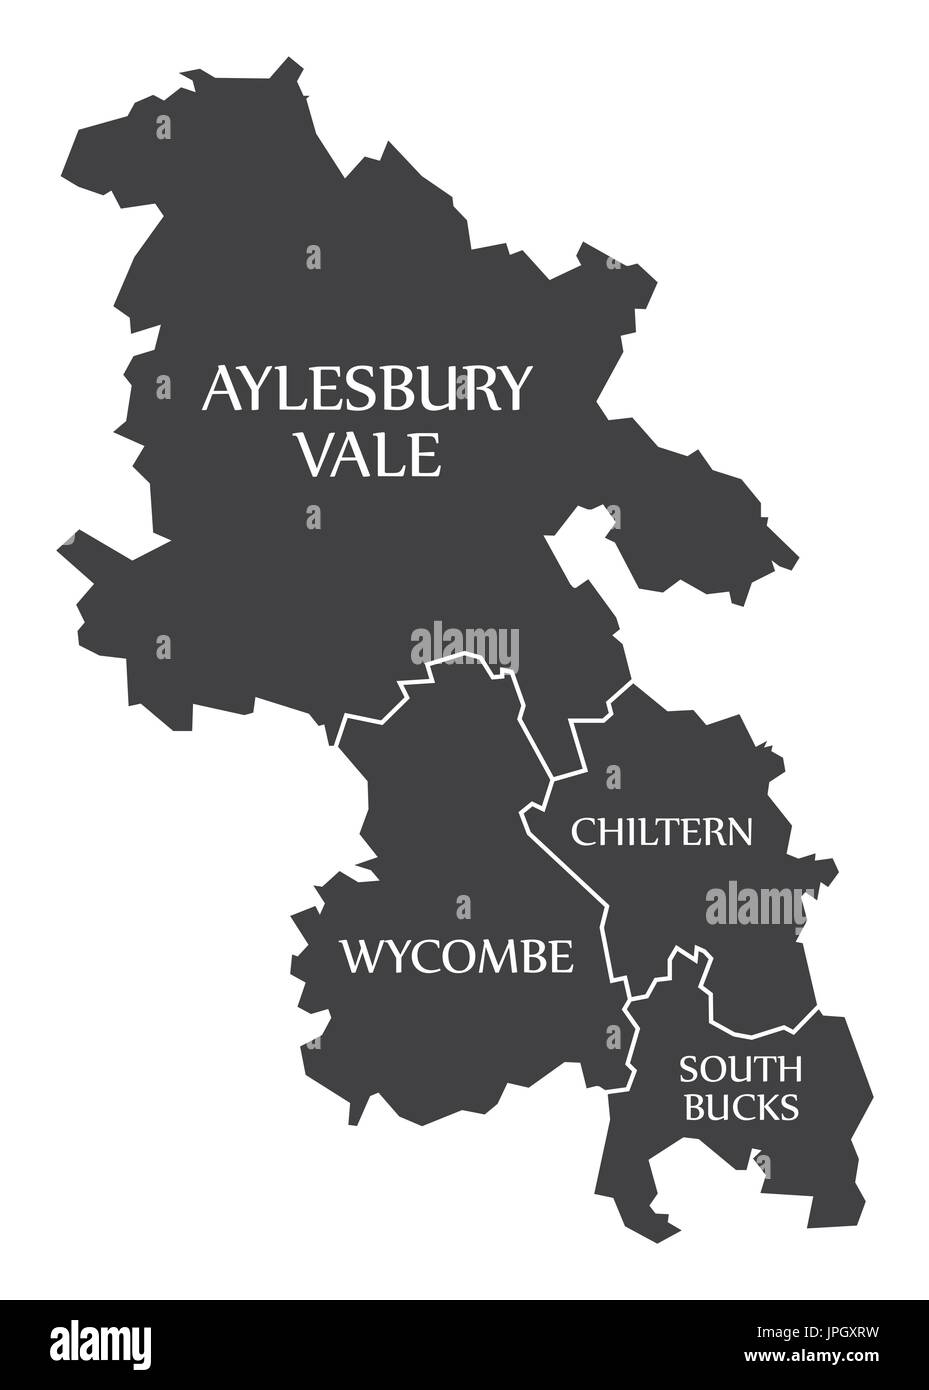 Grafschaft Buckinghamshire England UK schwarz-Karte mit weißen Etiketten Abbildung Stock Vektor